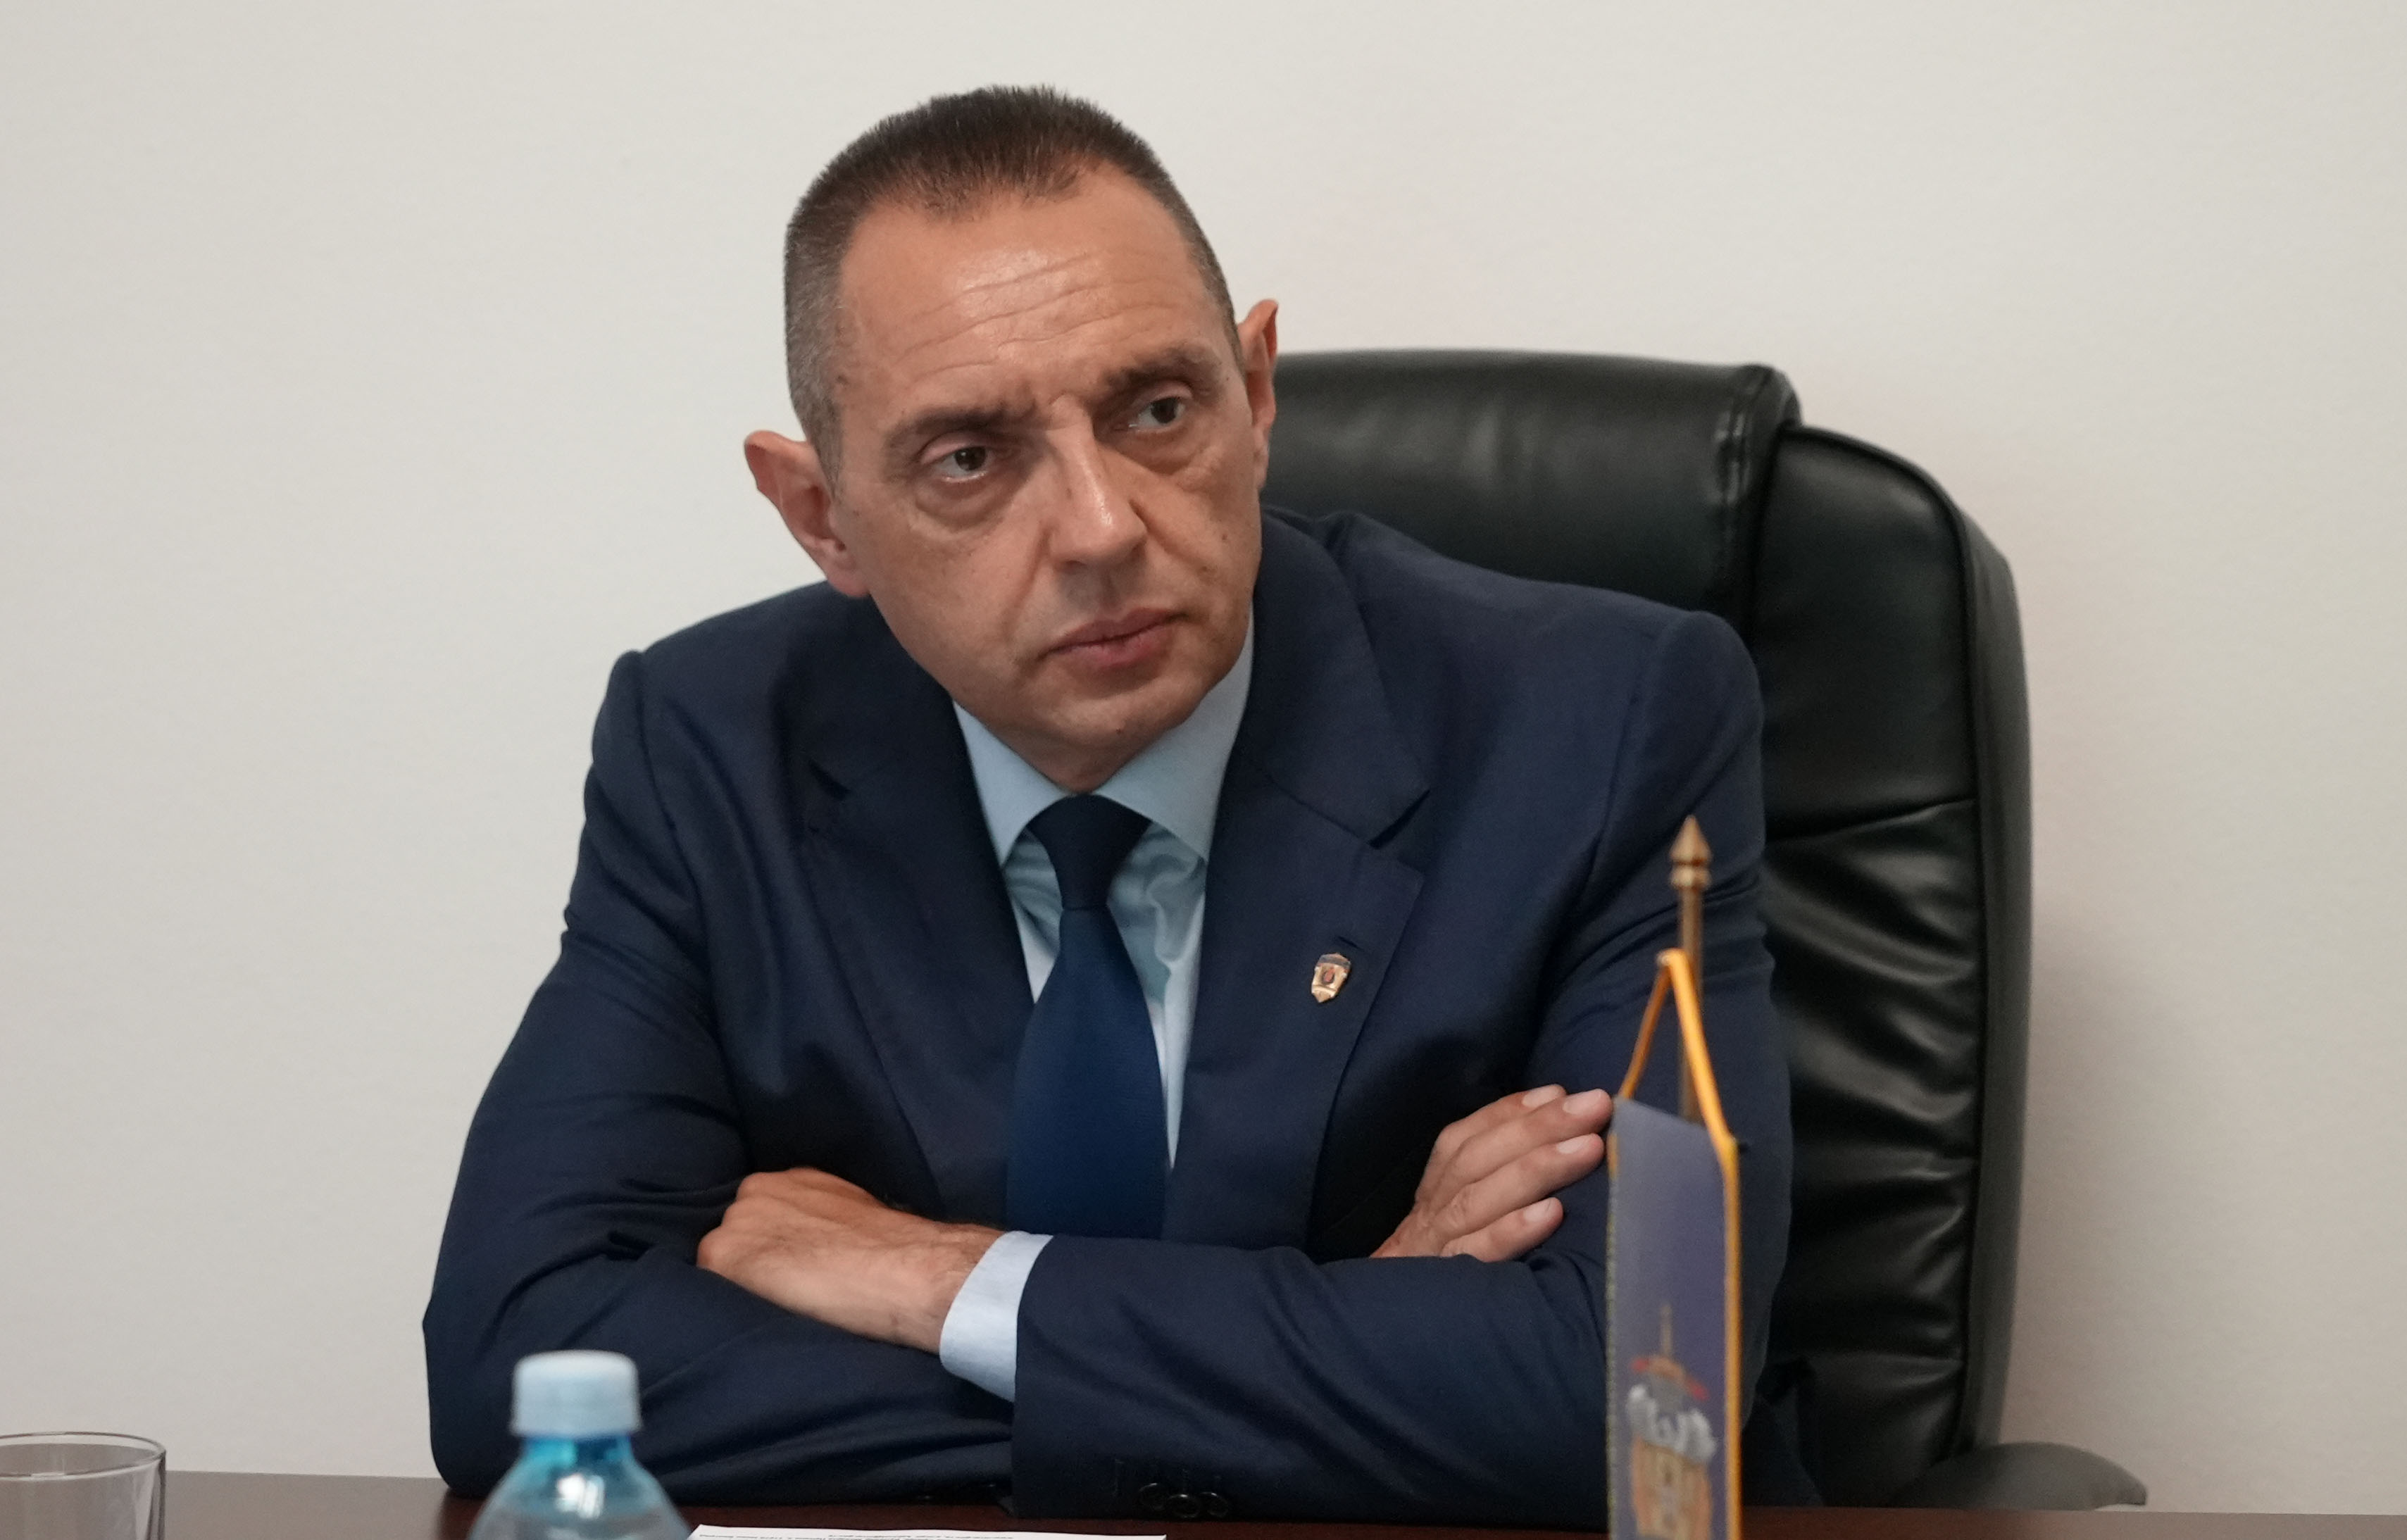 Ministar unutrašnjih poslova Aleksandar Vulin obišao Jedinicu za suzbijanje ekološkog kriminala i zaštitu životne sredine